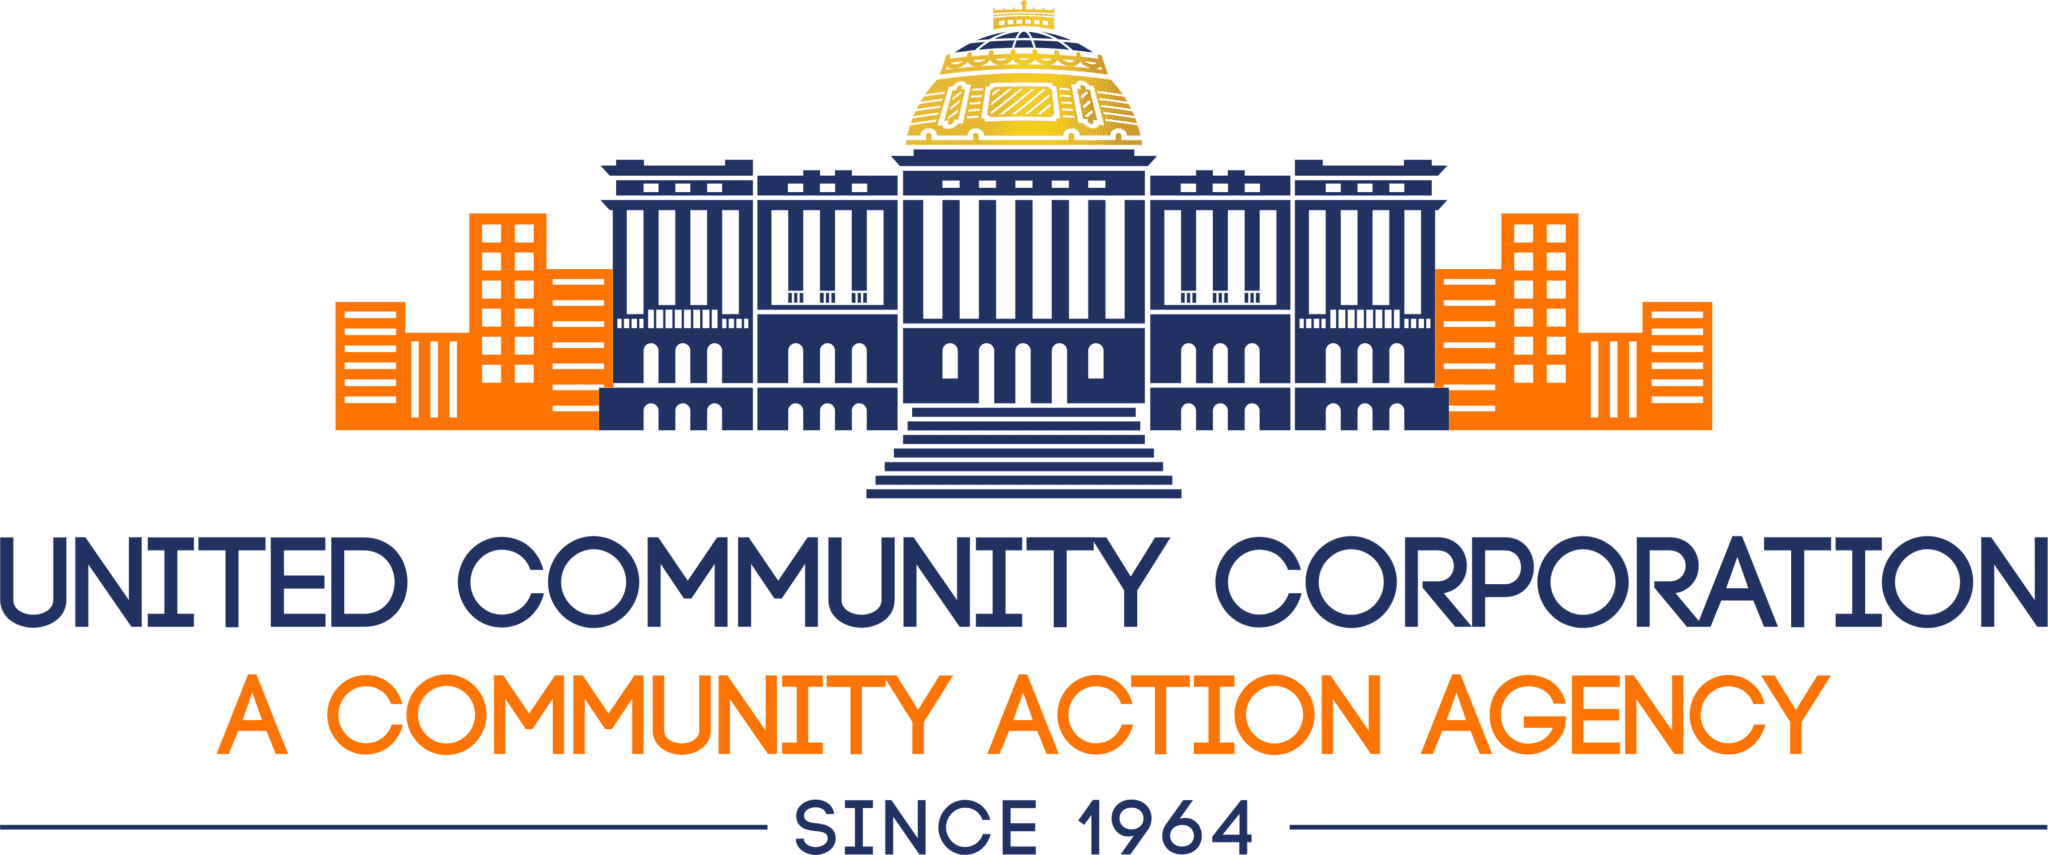 United Community Corporation logo